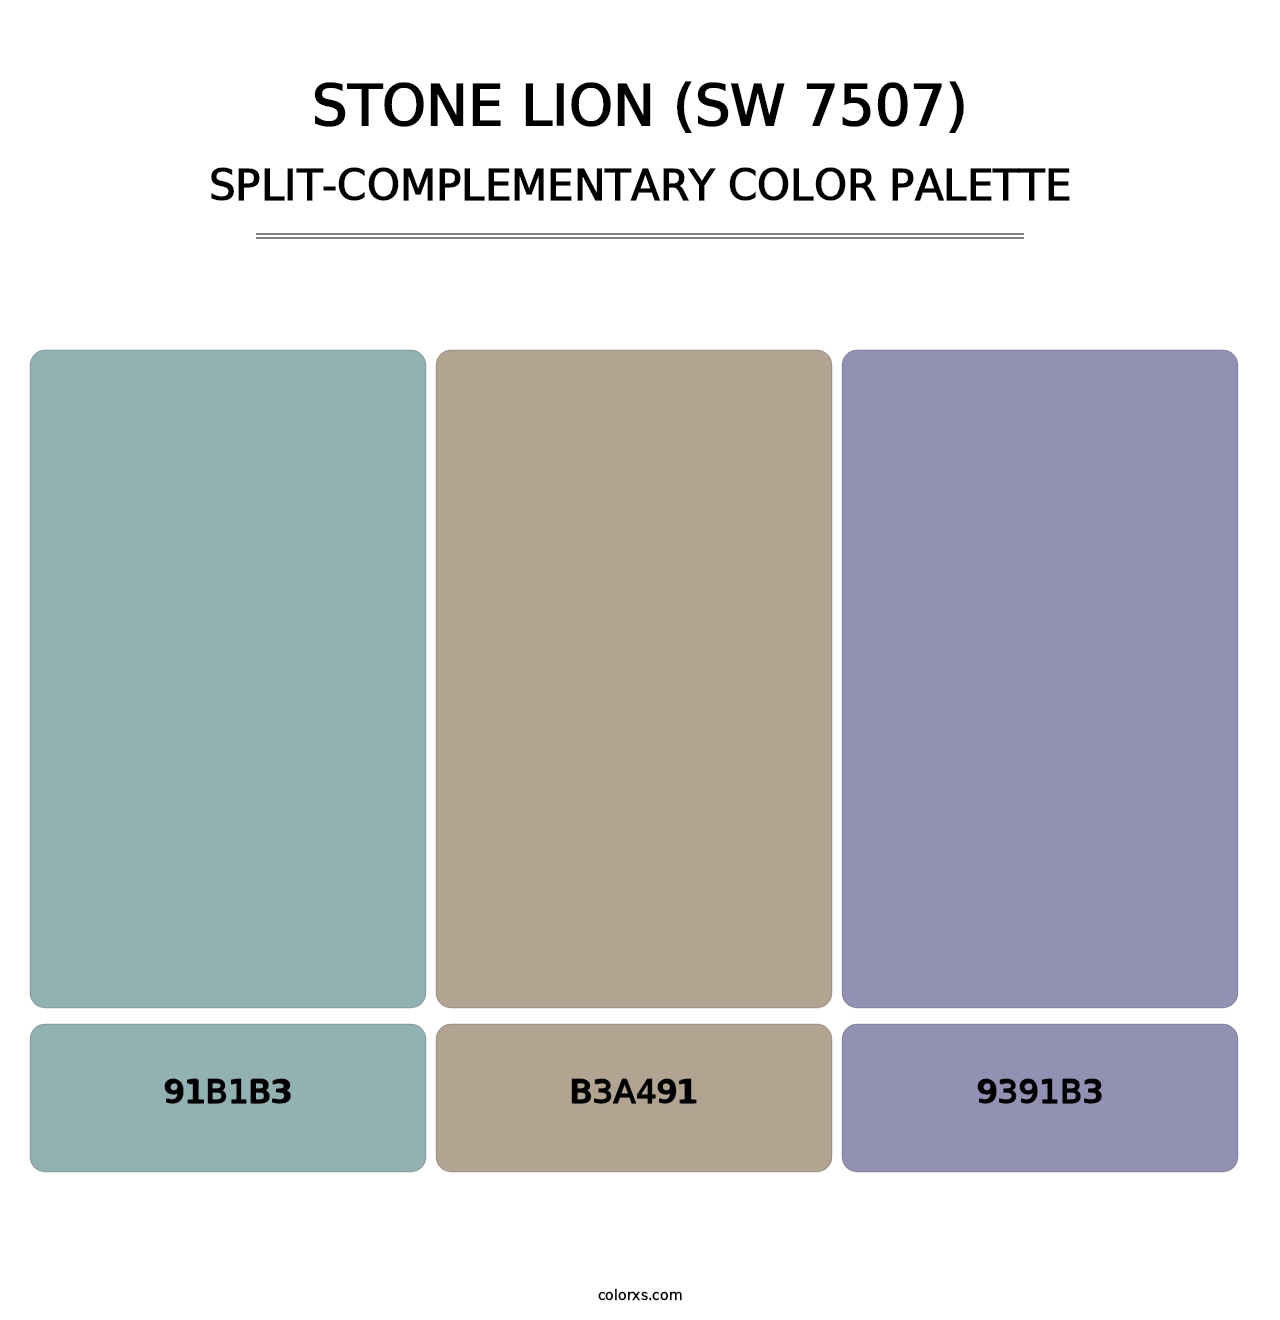 Stone Lion (SW 7507) - Split-Complementary Color Palette